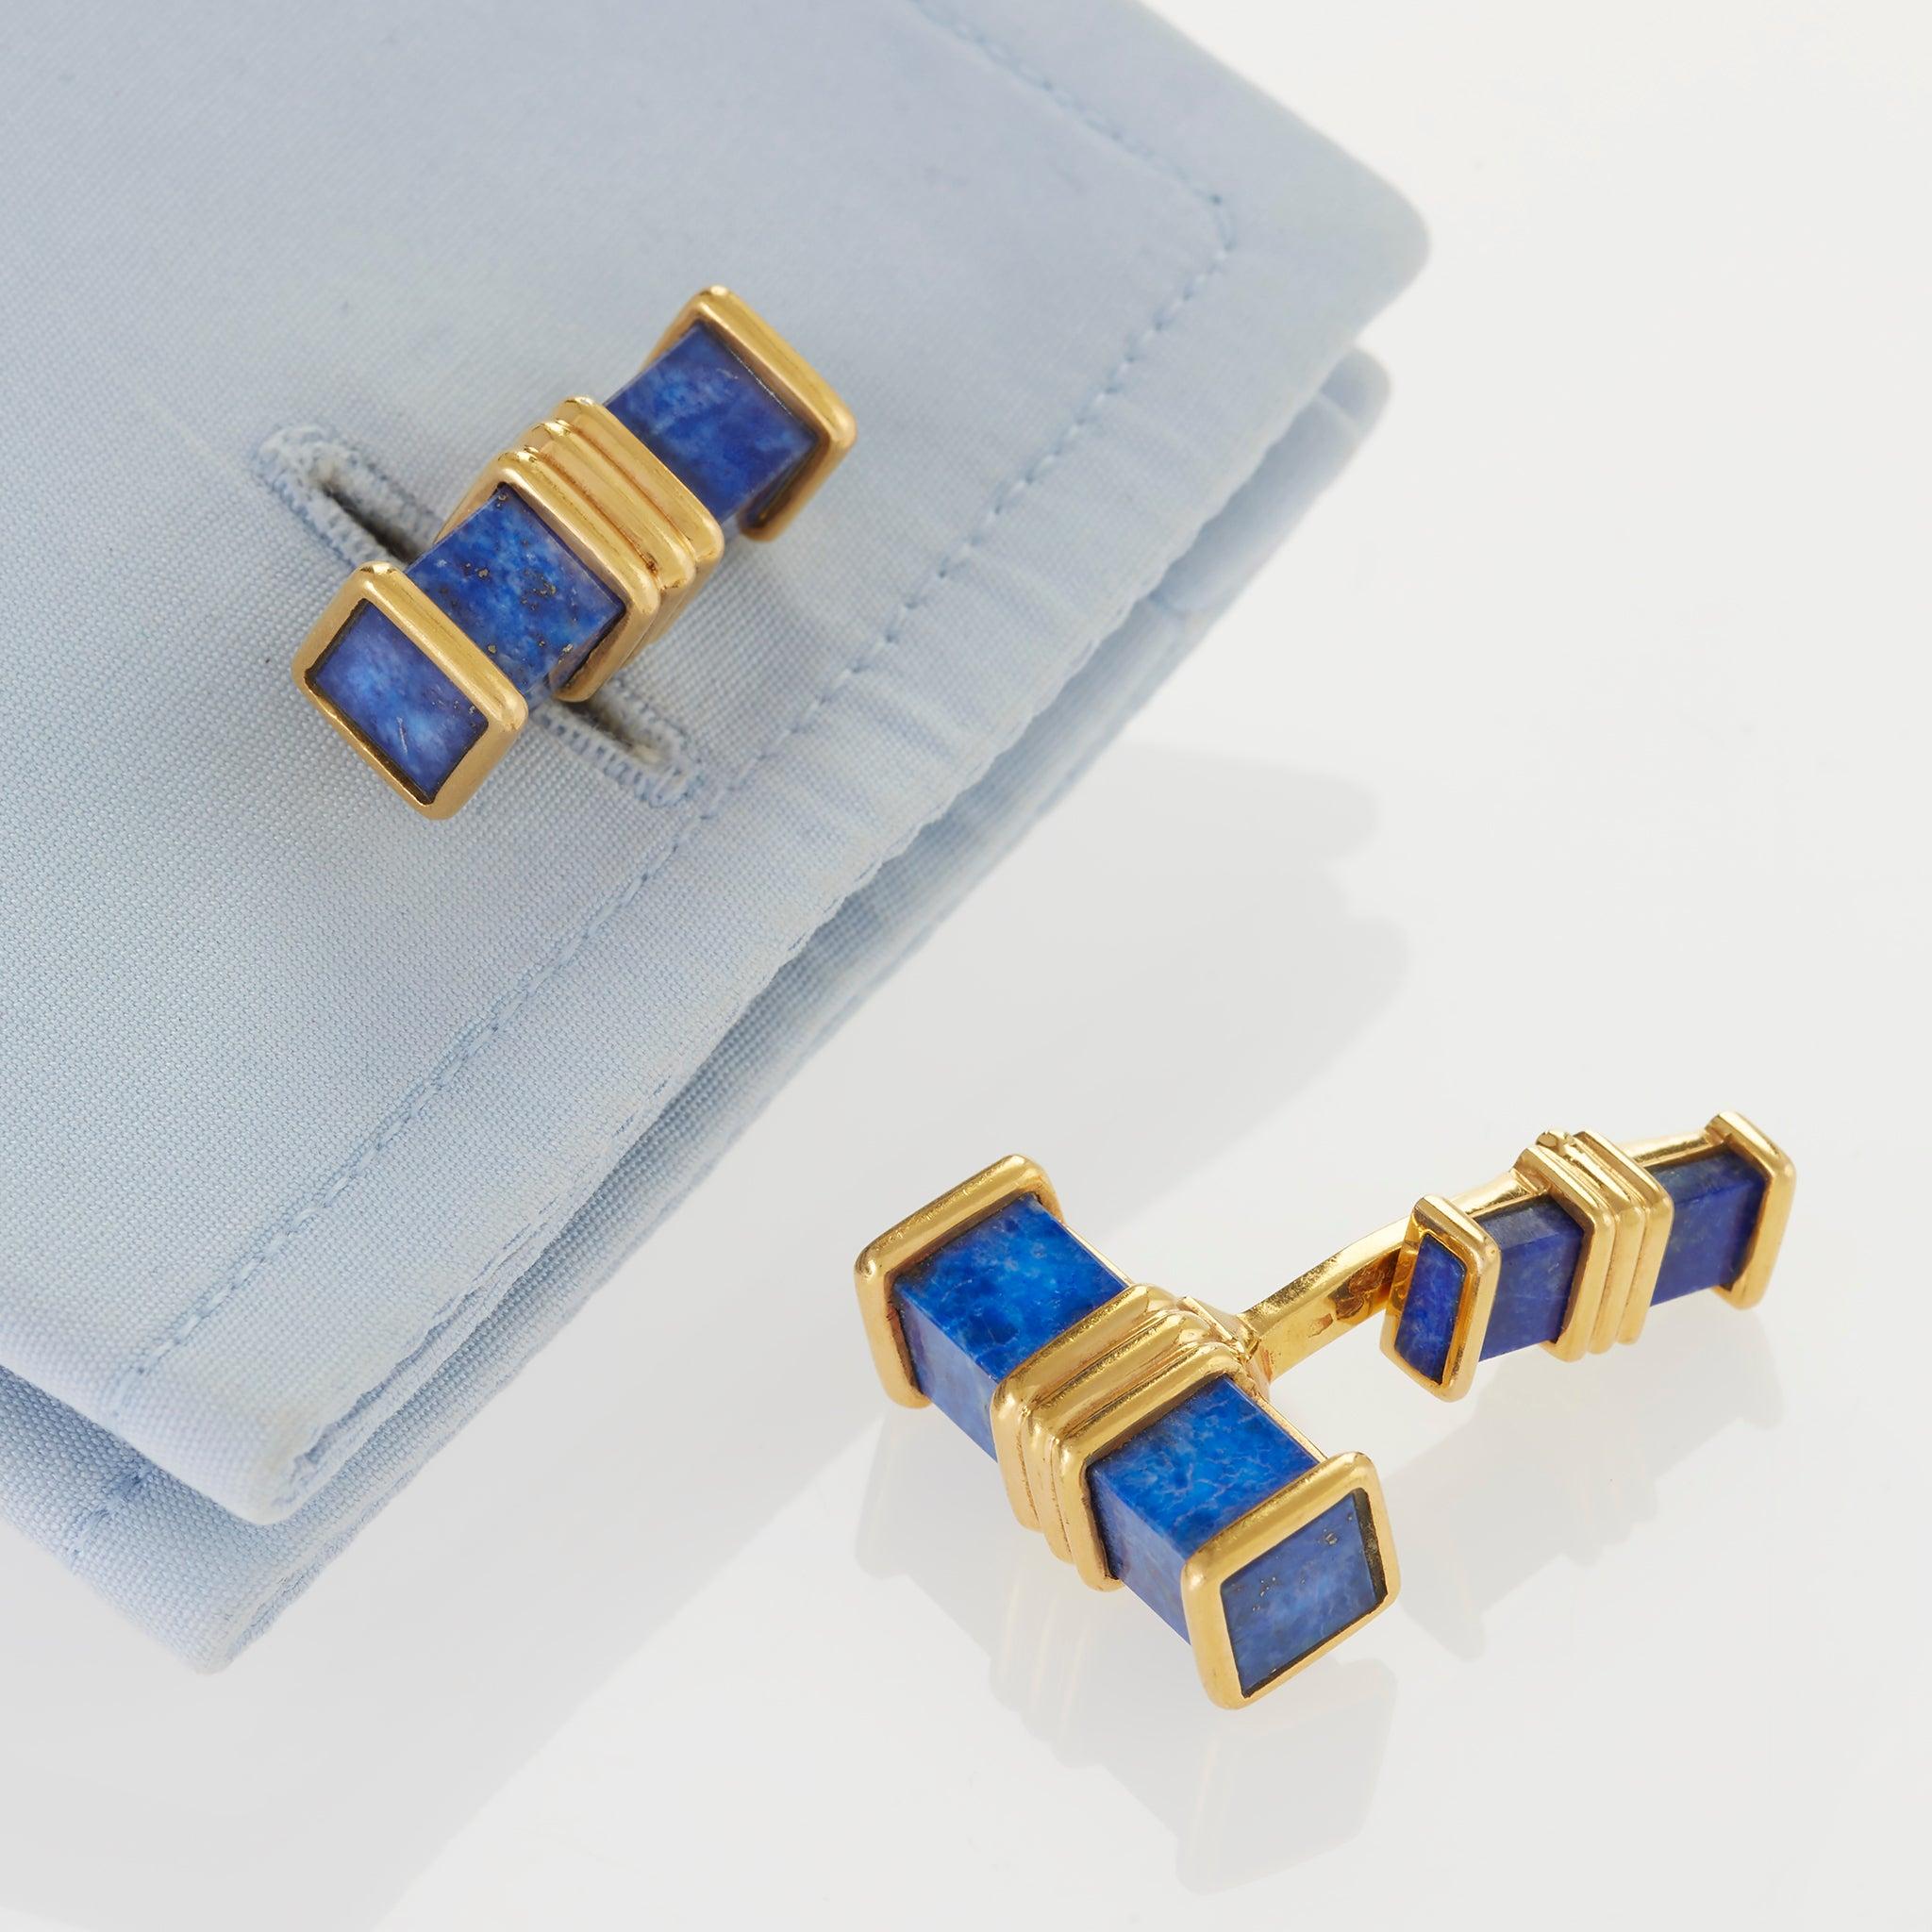 Créés à la fin du XXe siècle par Fred, Paris, ces boutons de manchette sont composés de lapis-lazuli et d'or 18K. Chaque maillon double est conçu comme un bâton rectangulaire lié par une monture striée, et relié par une barre légèrement incurvée à